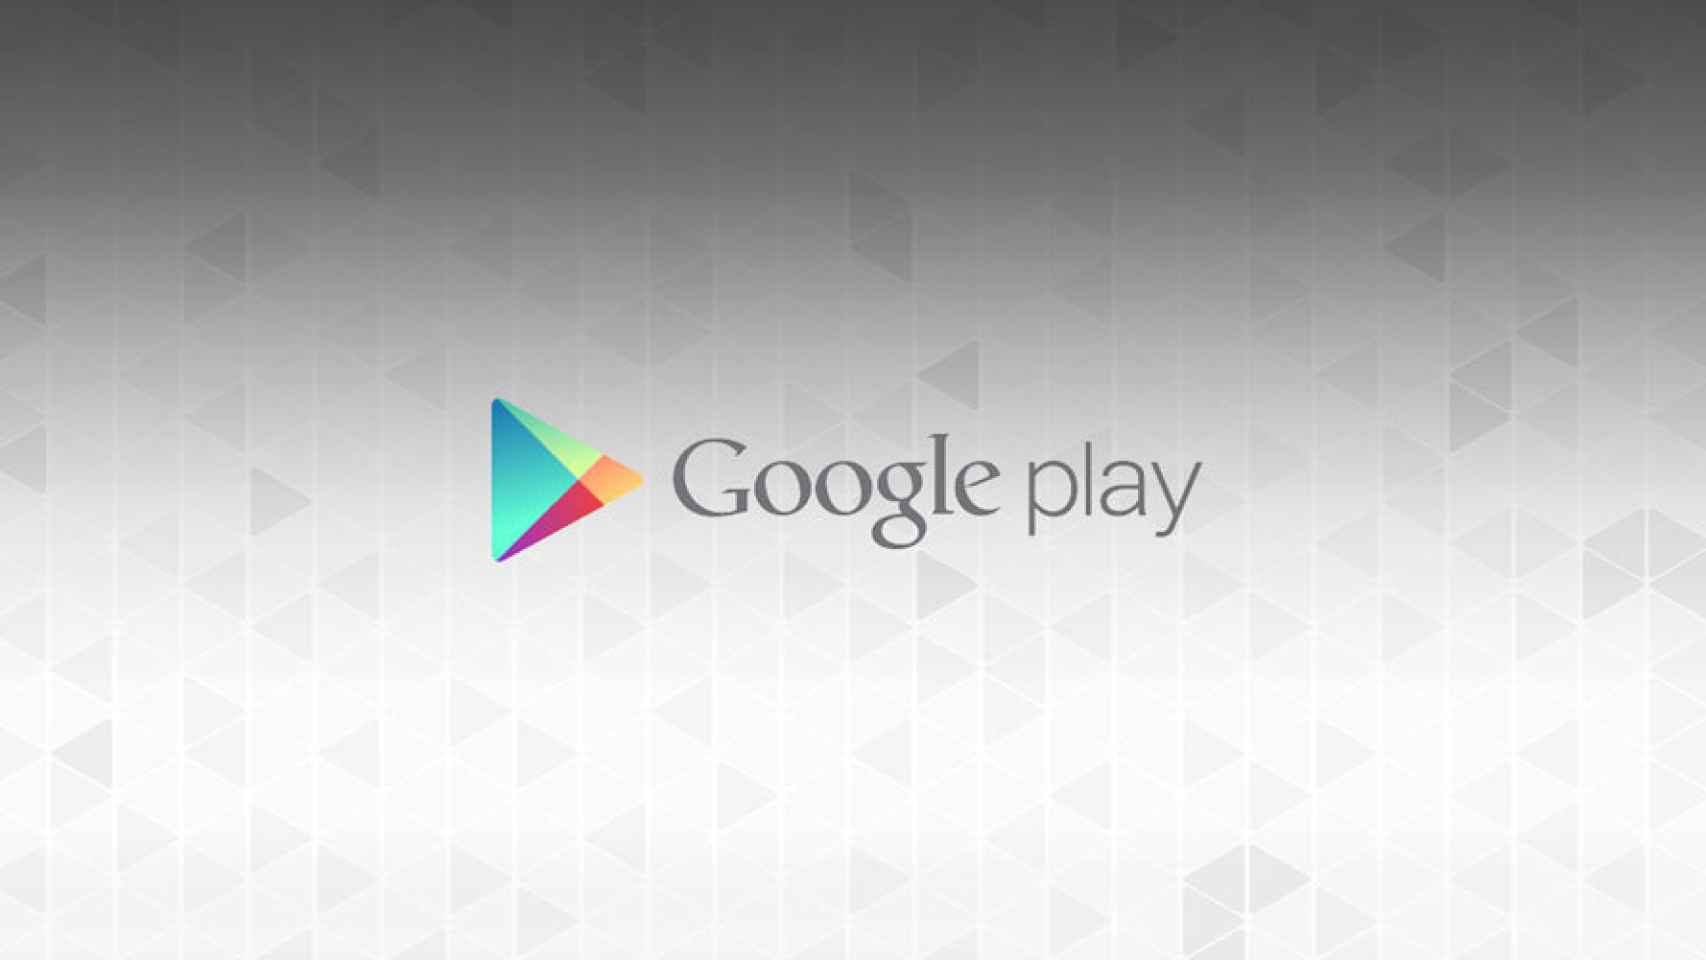 No puedo descargar whatsapp en play store - Comunidad de Google Play